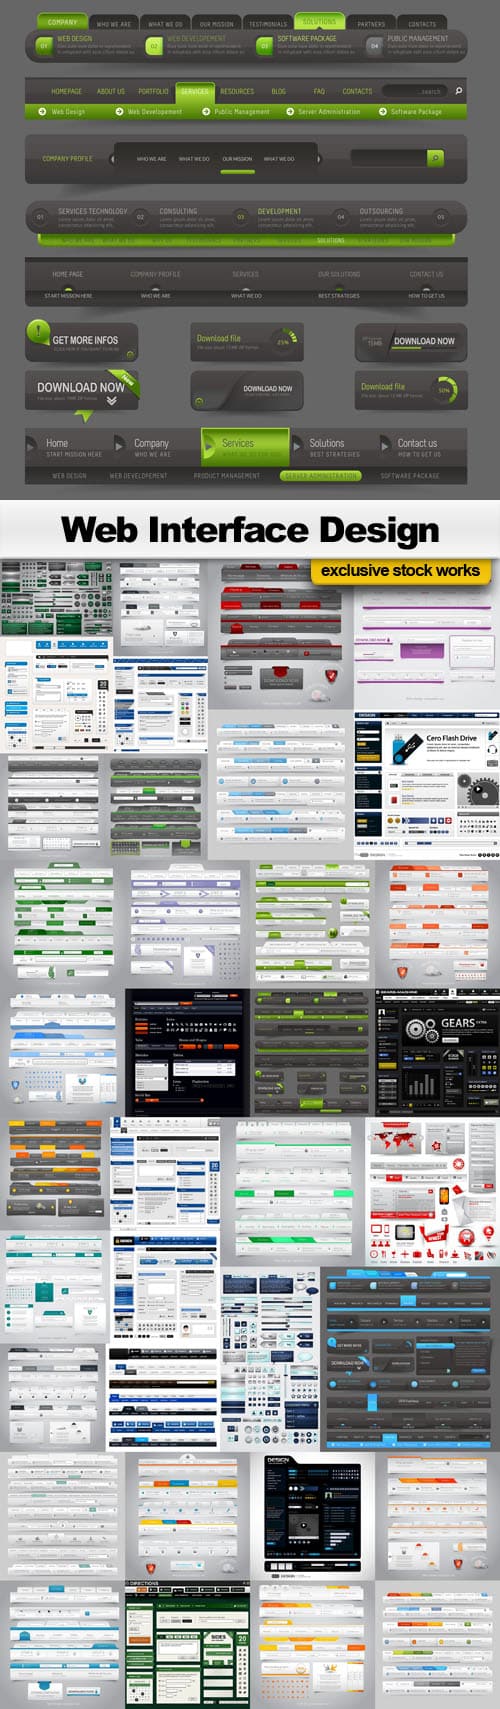 دانلود مجموعه 36 وکتور طراحی رابط کاربری وب